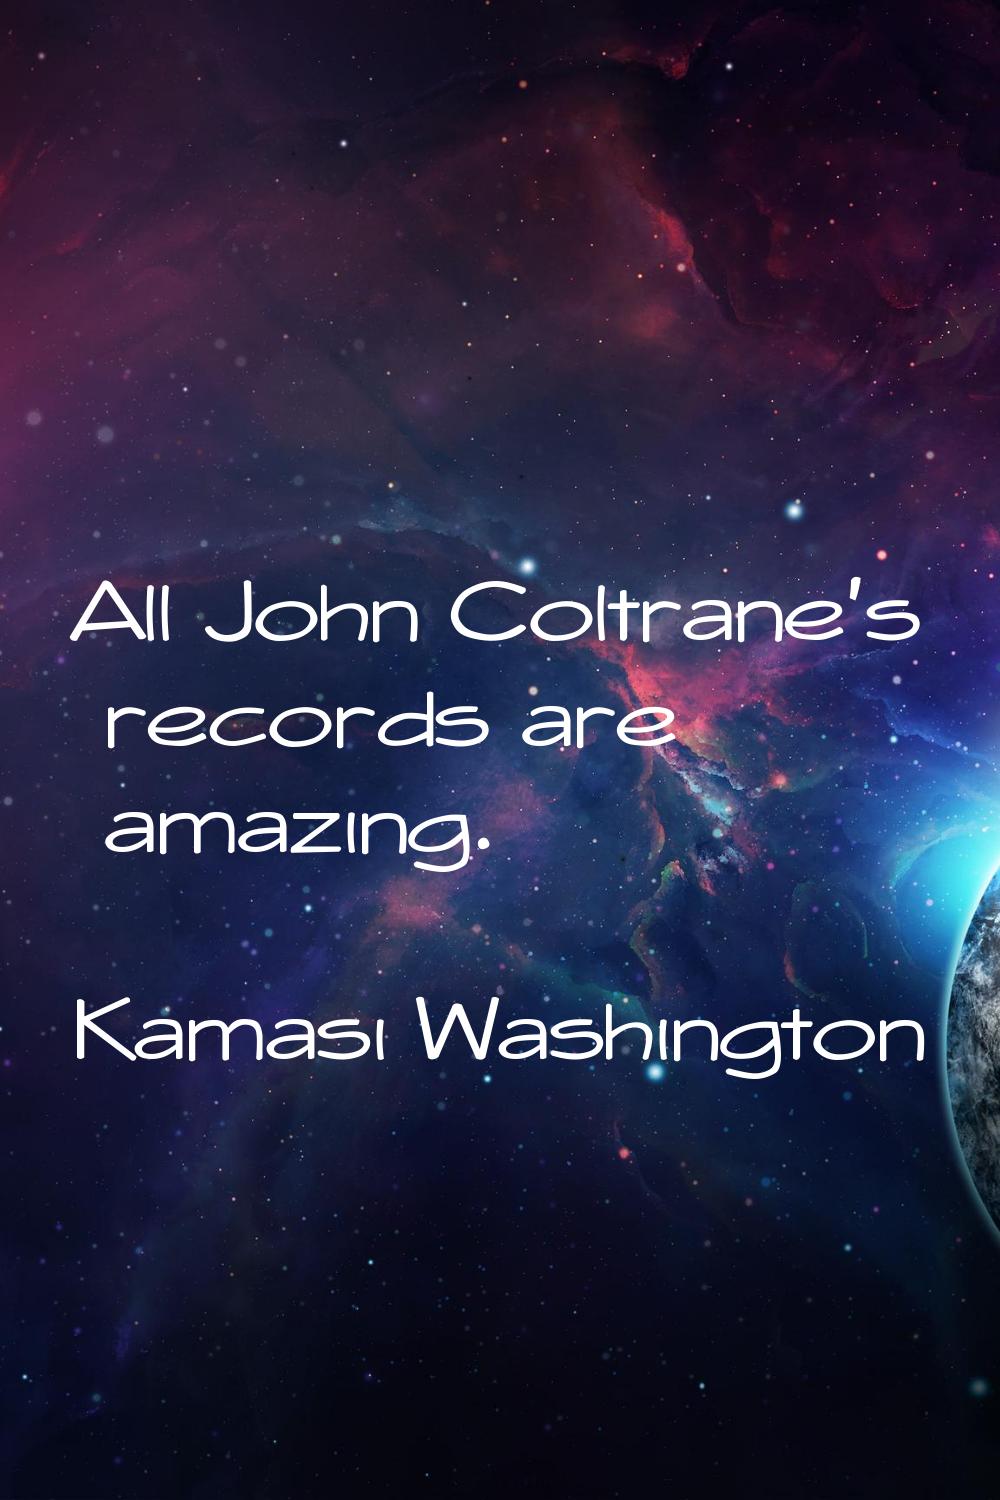 All John Coltrane's records are amazing.